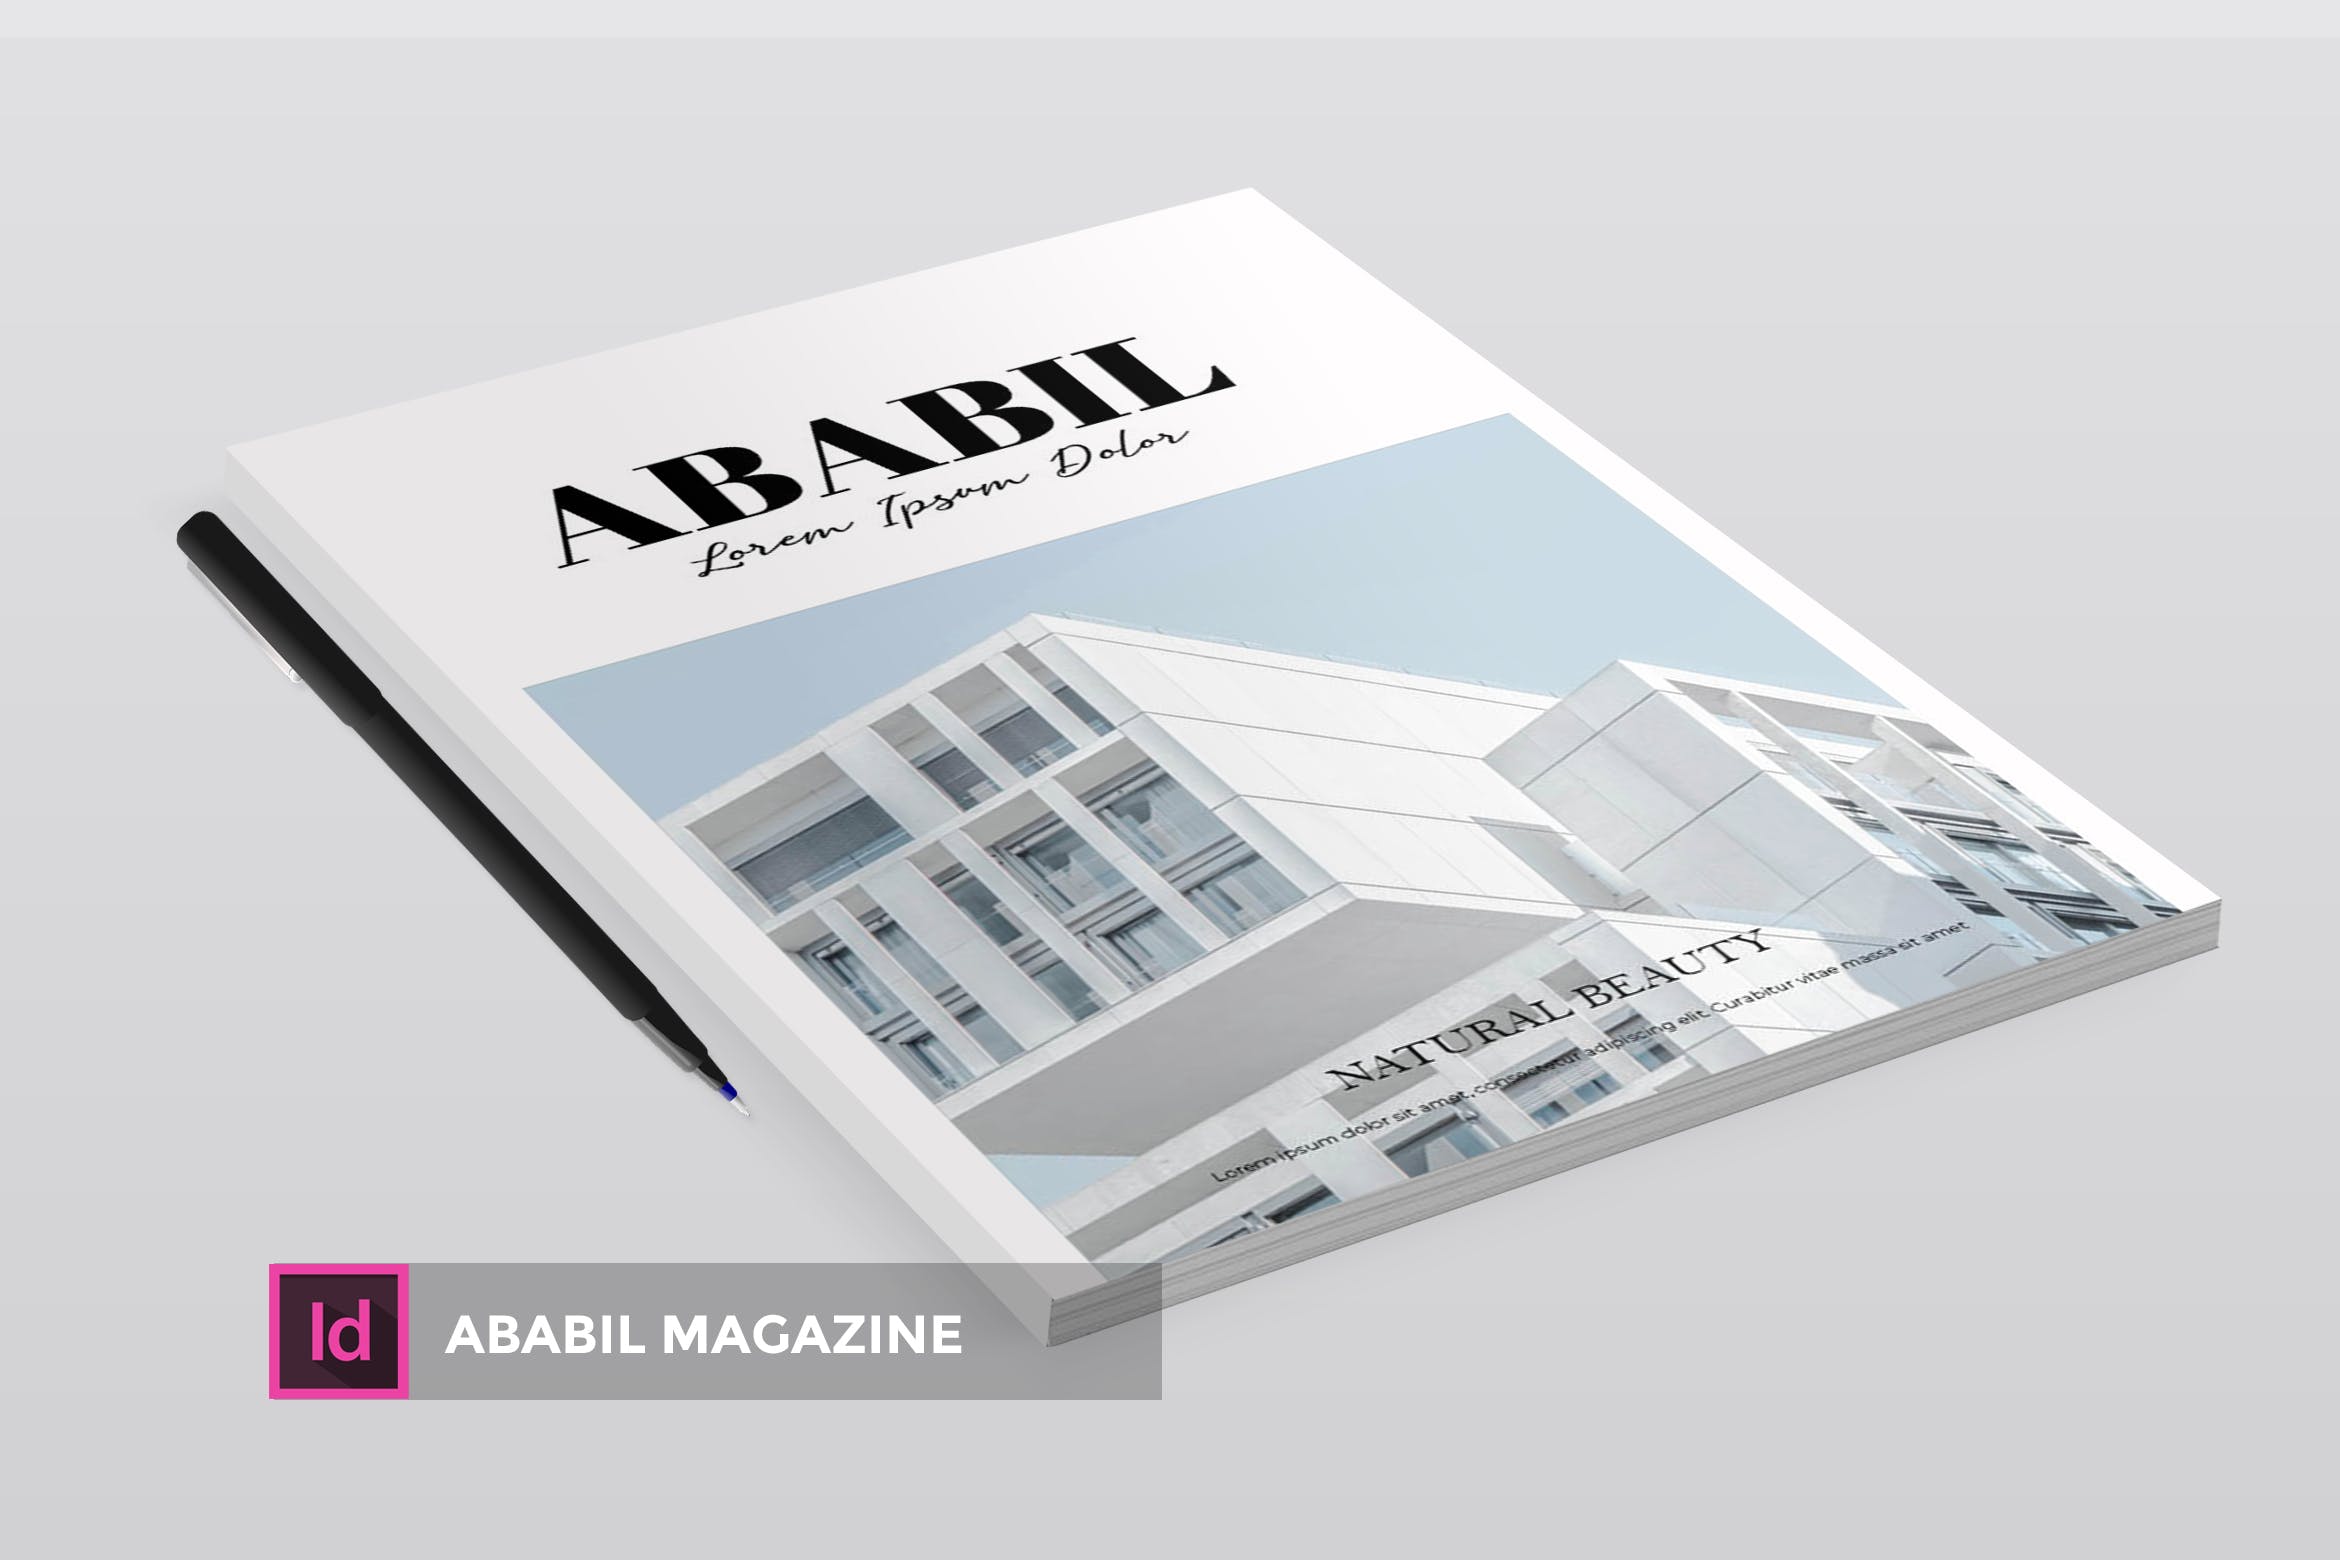 高端建筑/设计/房地产主题普贤居精选杂志排版设计INDD模板 ABABIL | Magazine Template插图